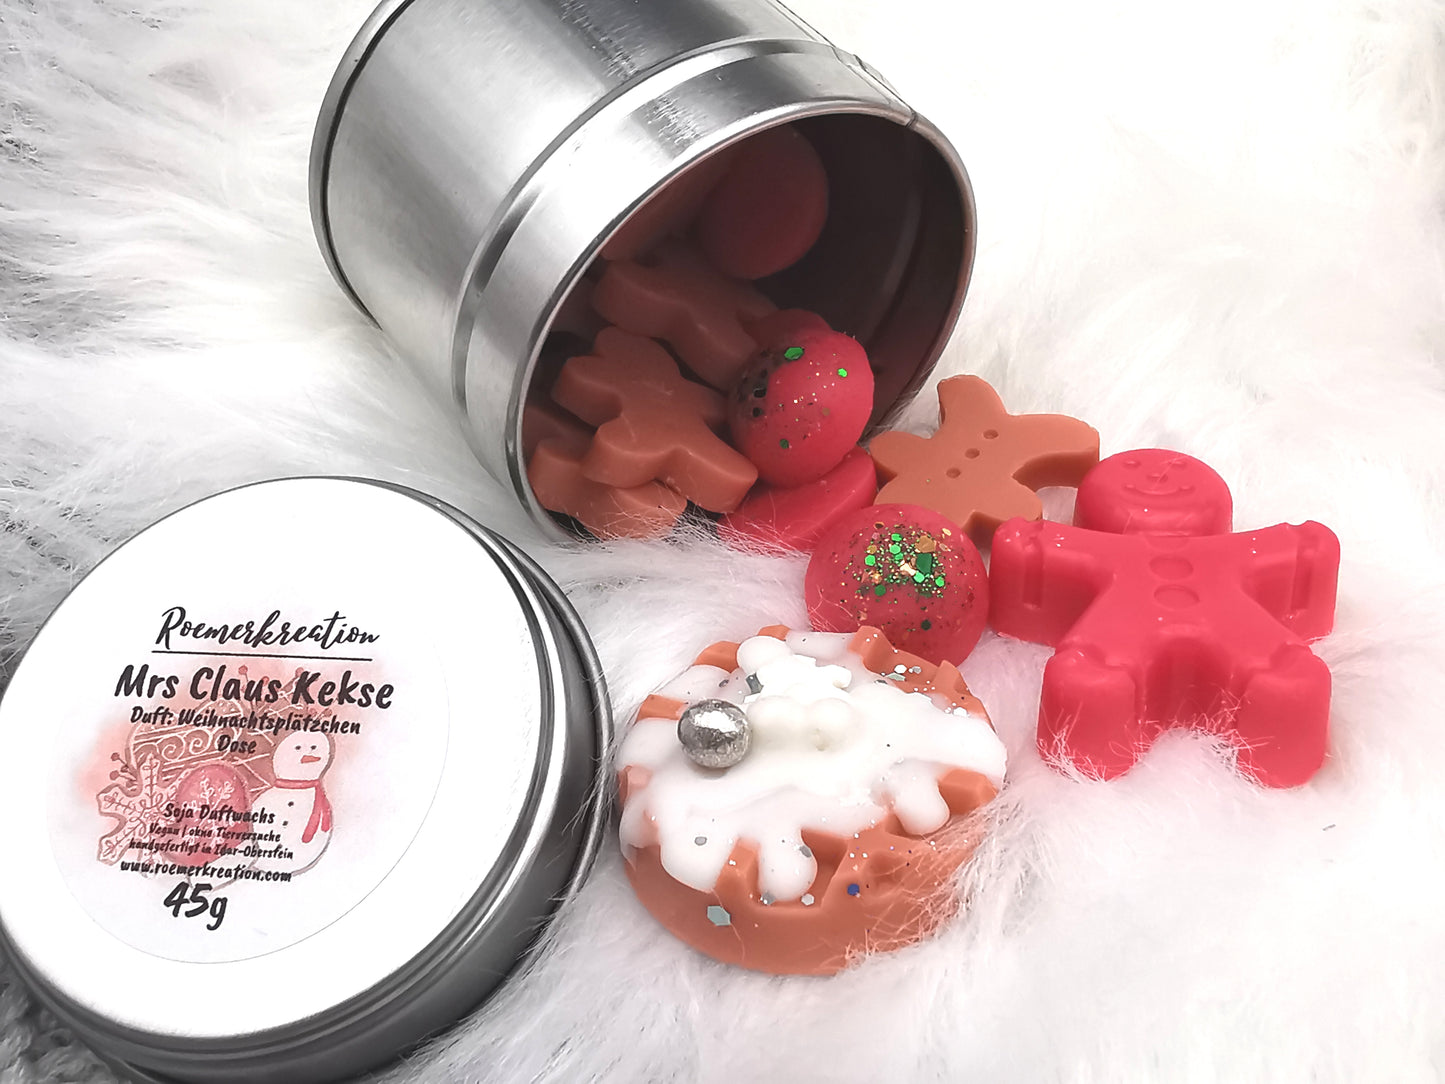 Mrs Claus Kekse | Weihnachtsplätzchen Duft | verschiedene Varianten| limitierte Edition | Sojawachs | Handgefertigtes Duftwachs